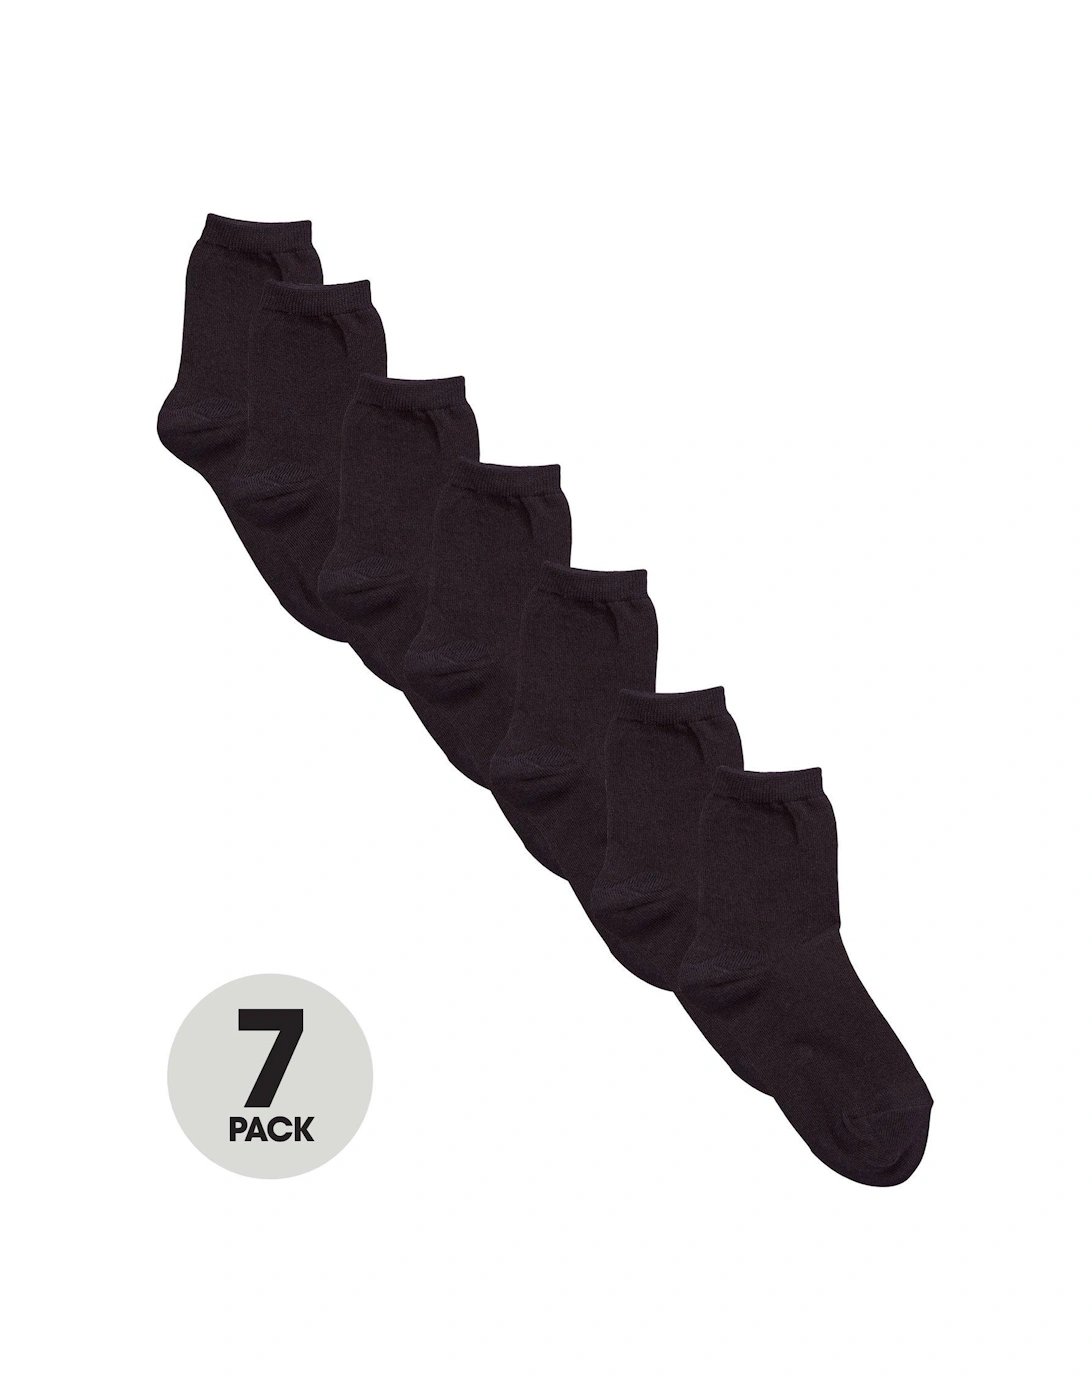 7 Pack Unisex Ankle Socks - Black, 4 of 3